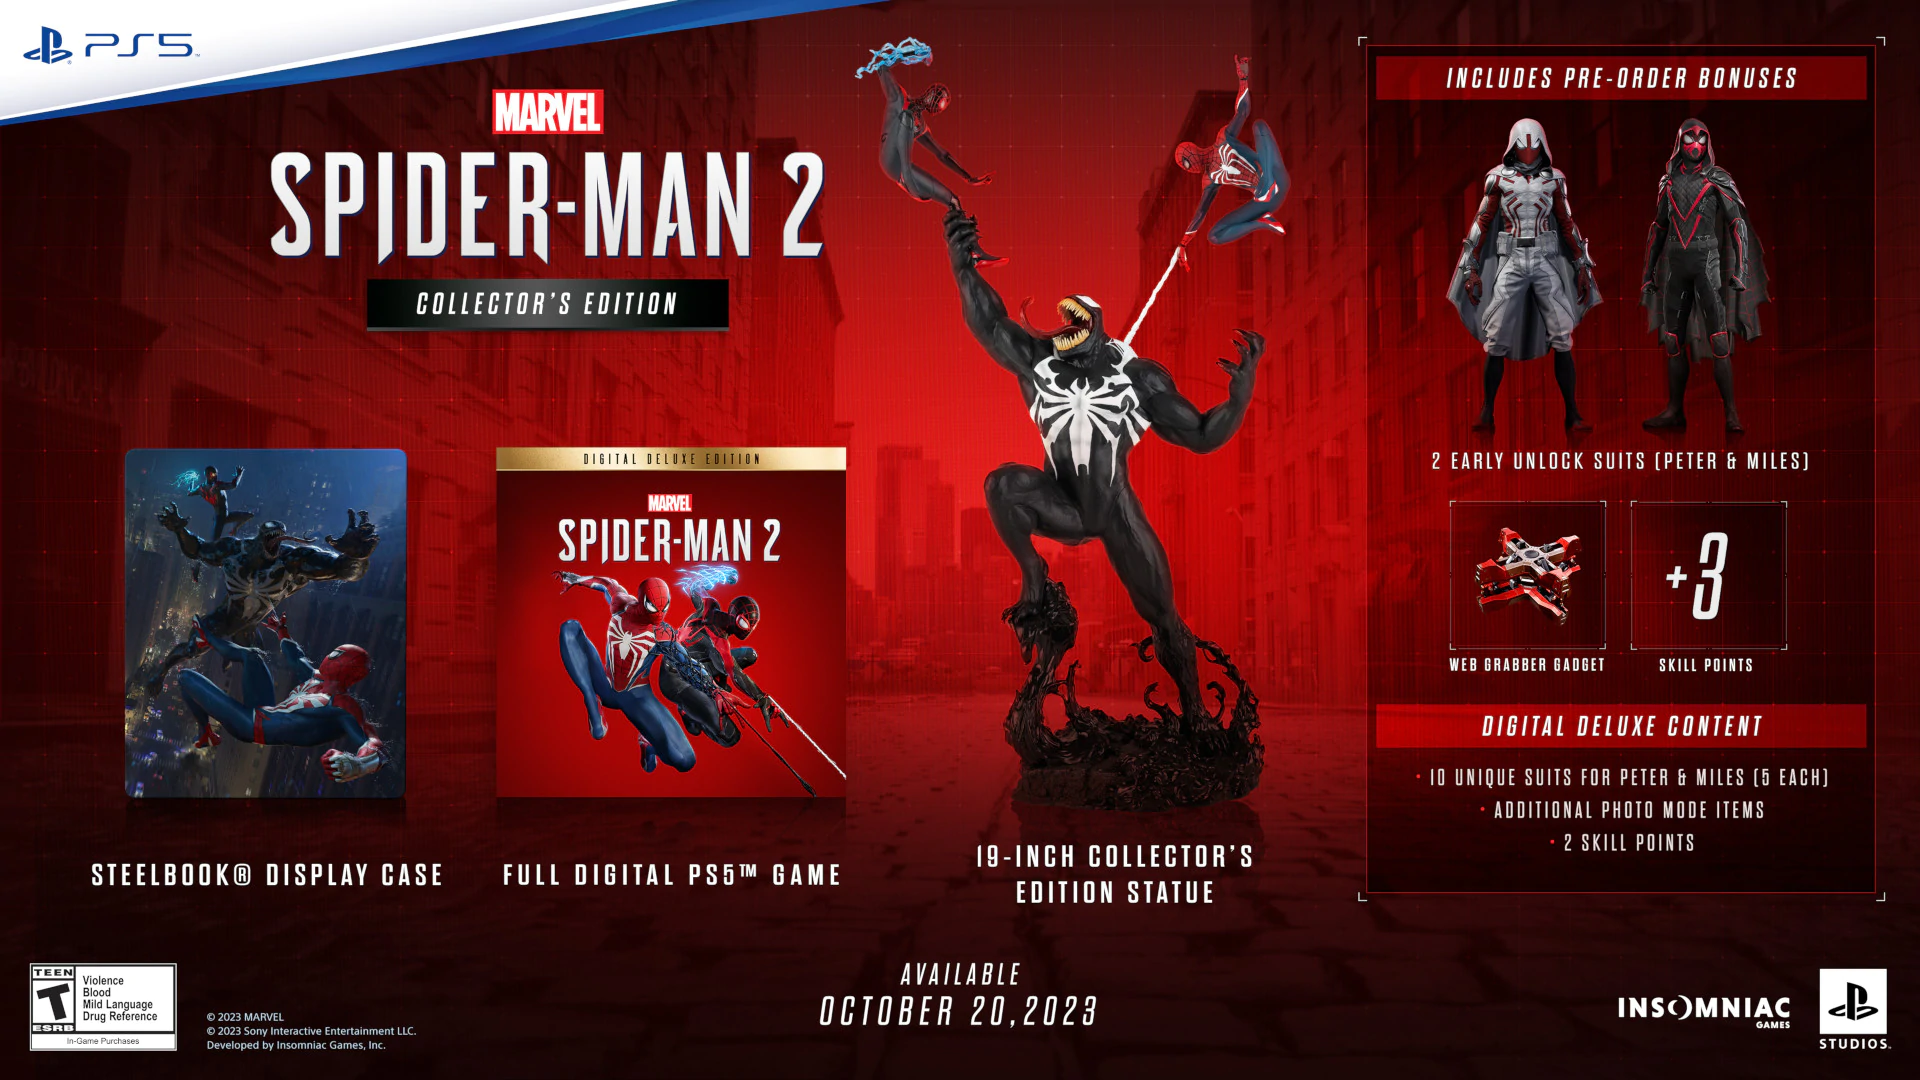 marvels spider man 2 collectors edition | Spider-Man 2 | เก็บเงินรอ Marvel’s Spider-Man 2 มีกำหนดวางขาย 20 ตุลาคม 2023 บน PS5 พร้อมเผยชุดสะสมน่าโดนสุดๆ